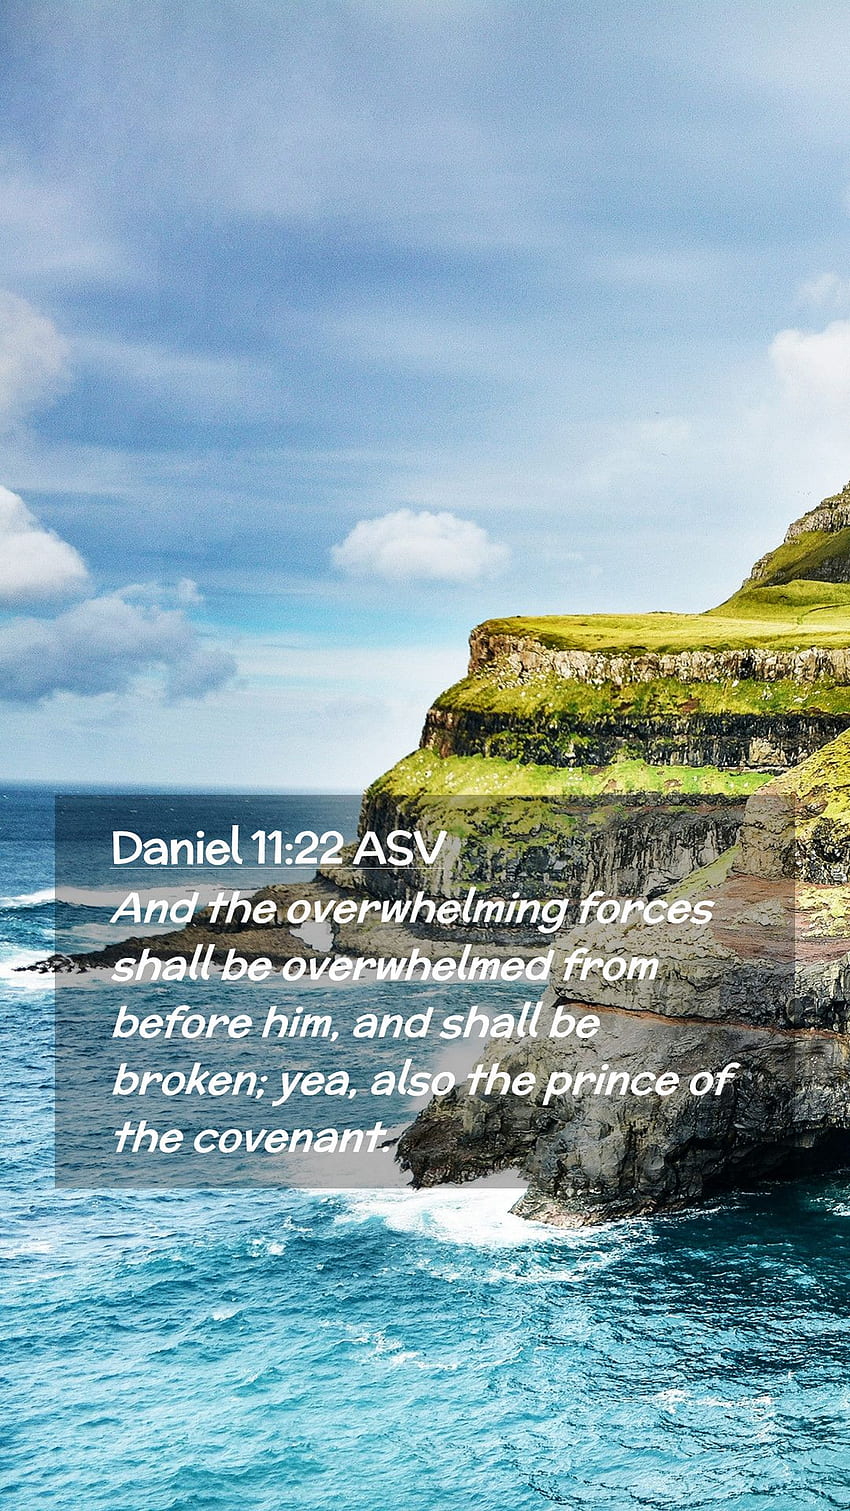 Daniel 11:22 NVI Teléfono Móvil - Y las fuerzas abrumadoras serán abrumadas fondo de pantalla del teléfono